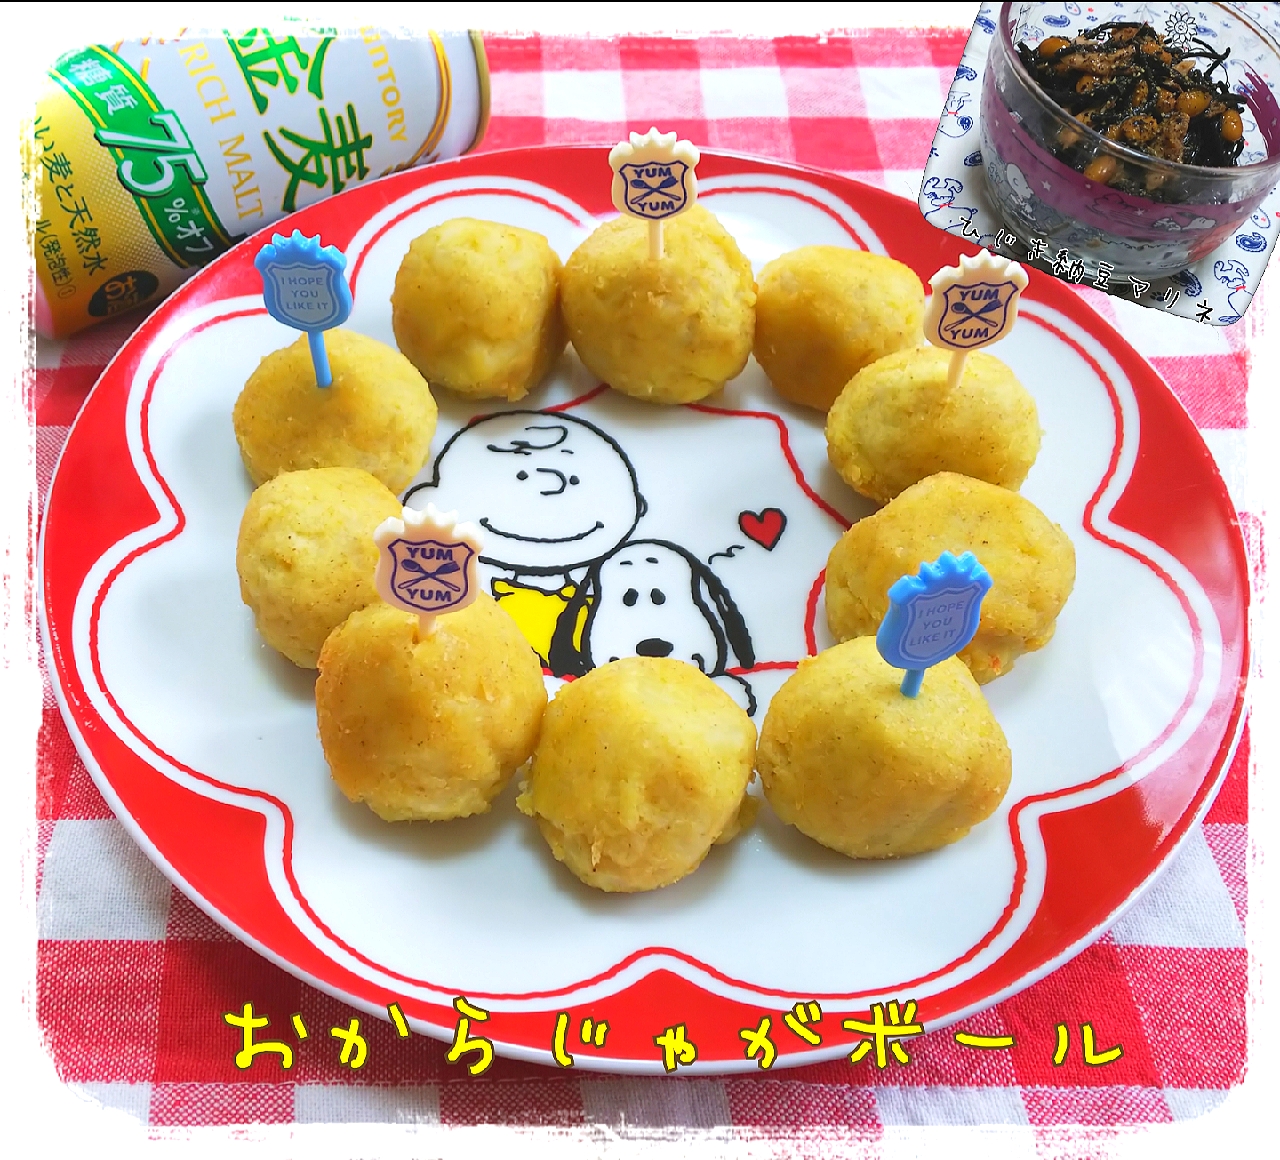 Ito Tomokoさんの
#おからじゃがボール
#ヒジキと納豆のマリネ